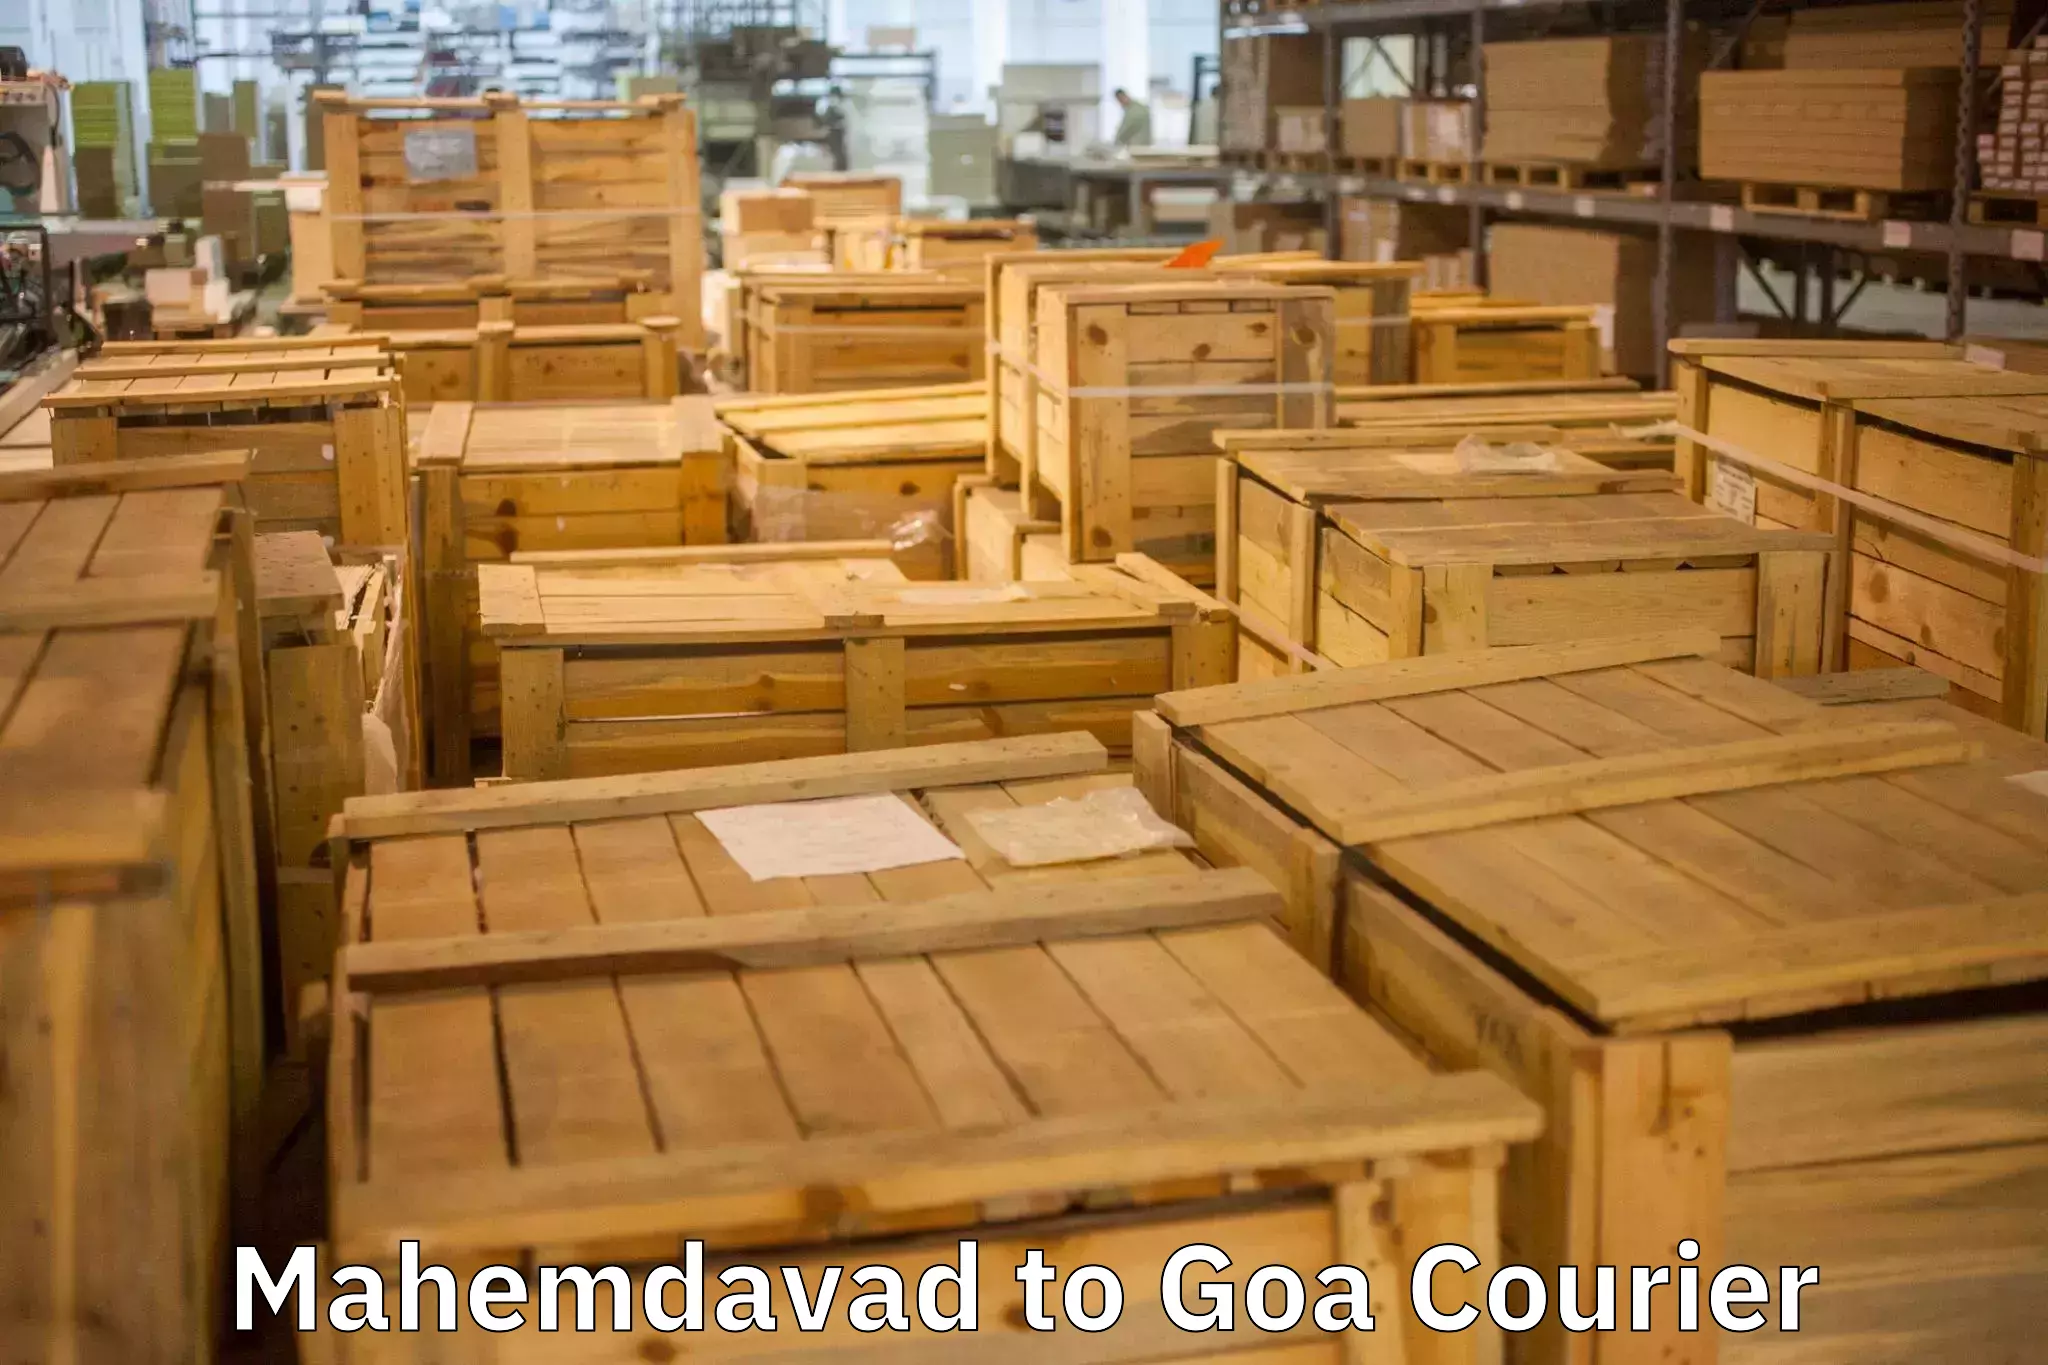 Door-to-door relocation services Mahemdavad to IIT Goa